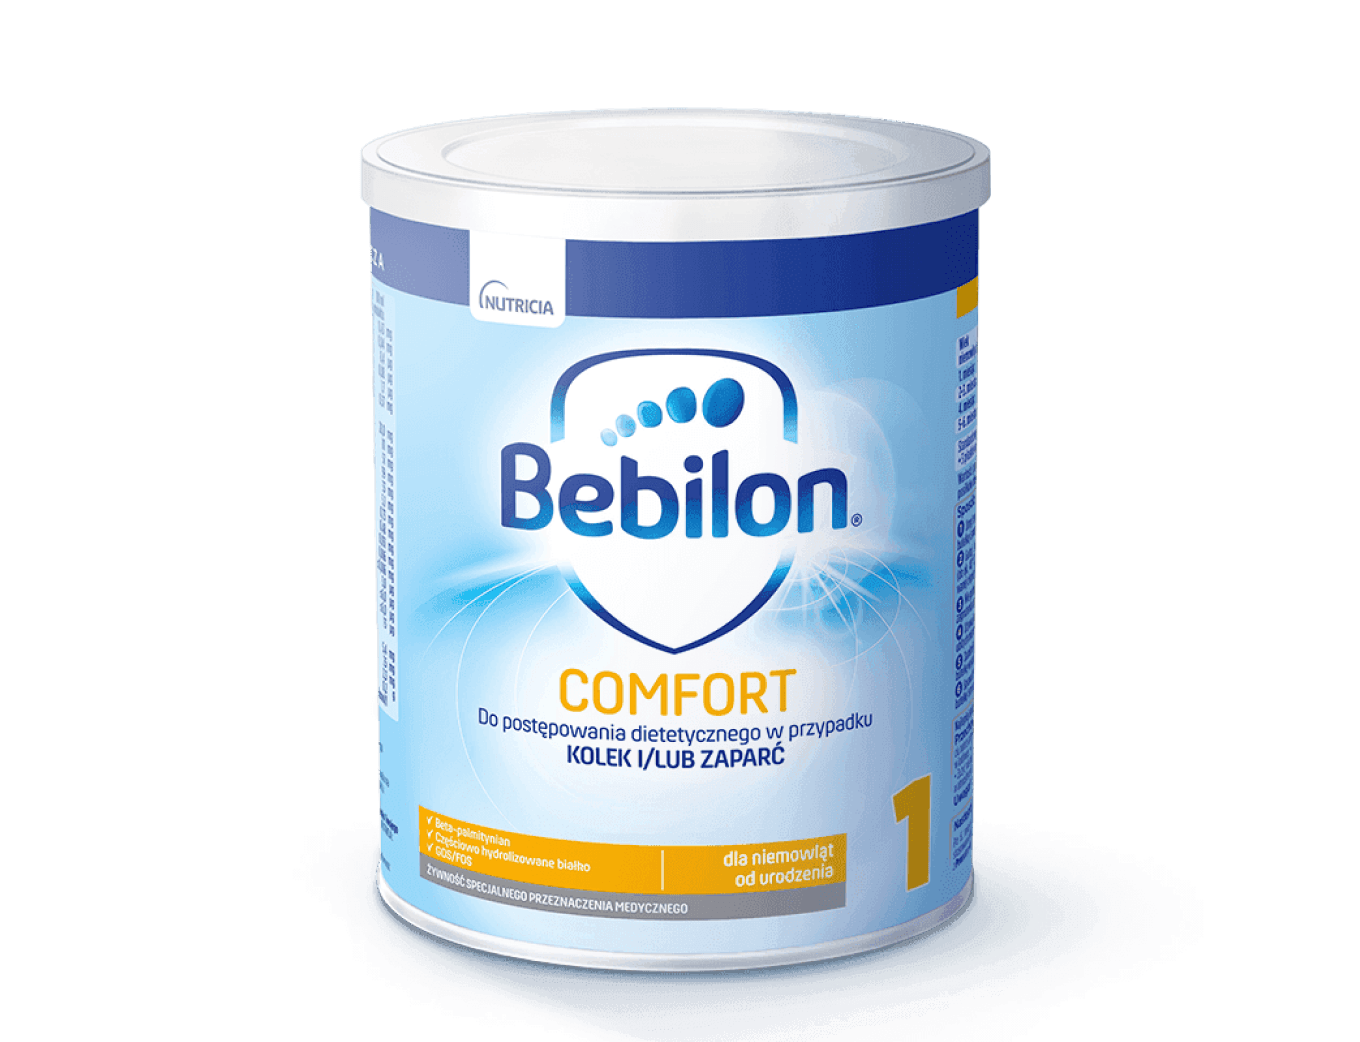 Bebilon_Comfort_1_400g_bFtCjWn.png